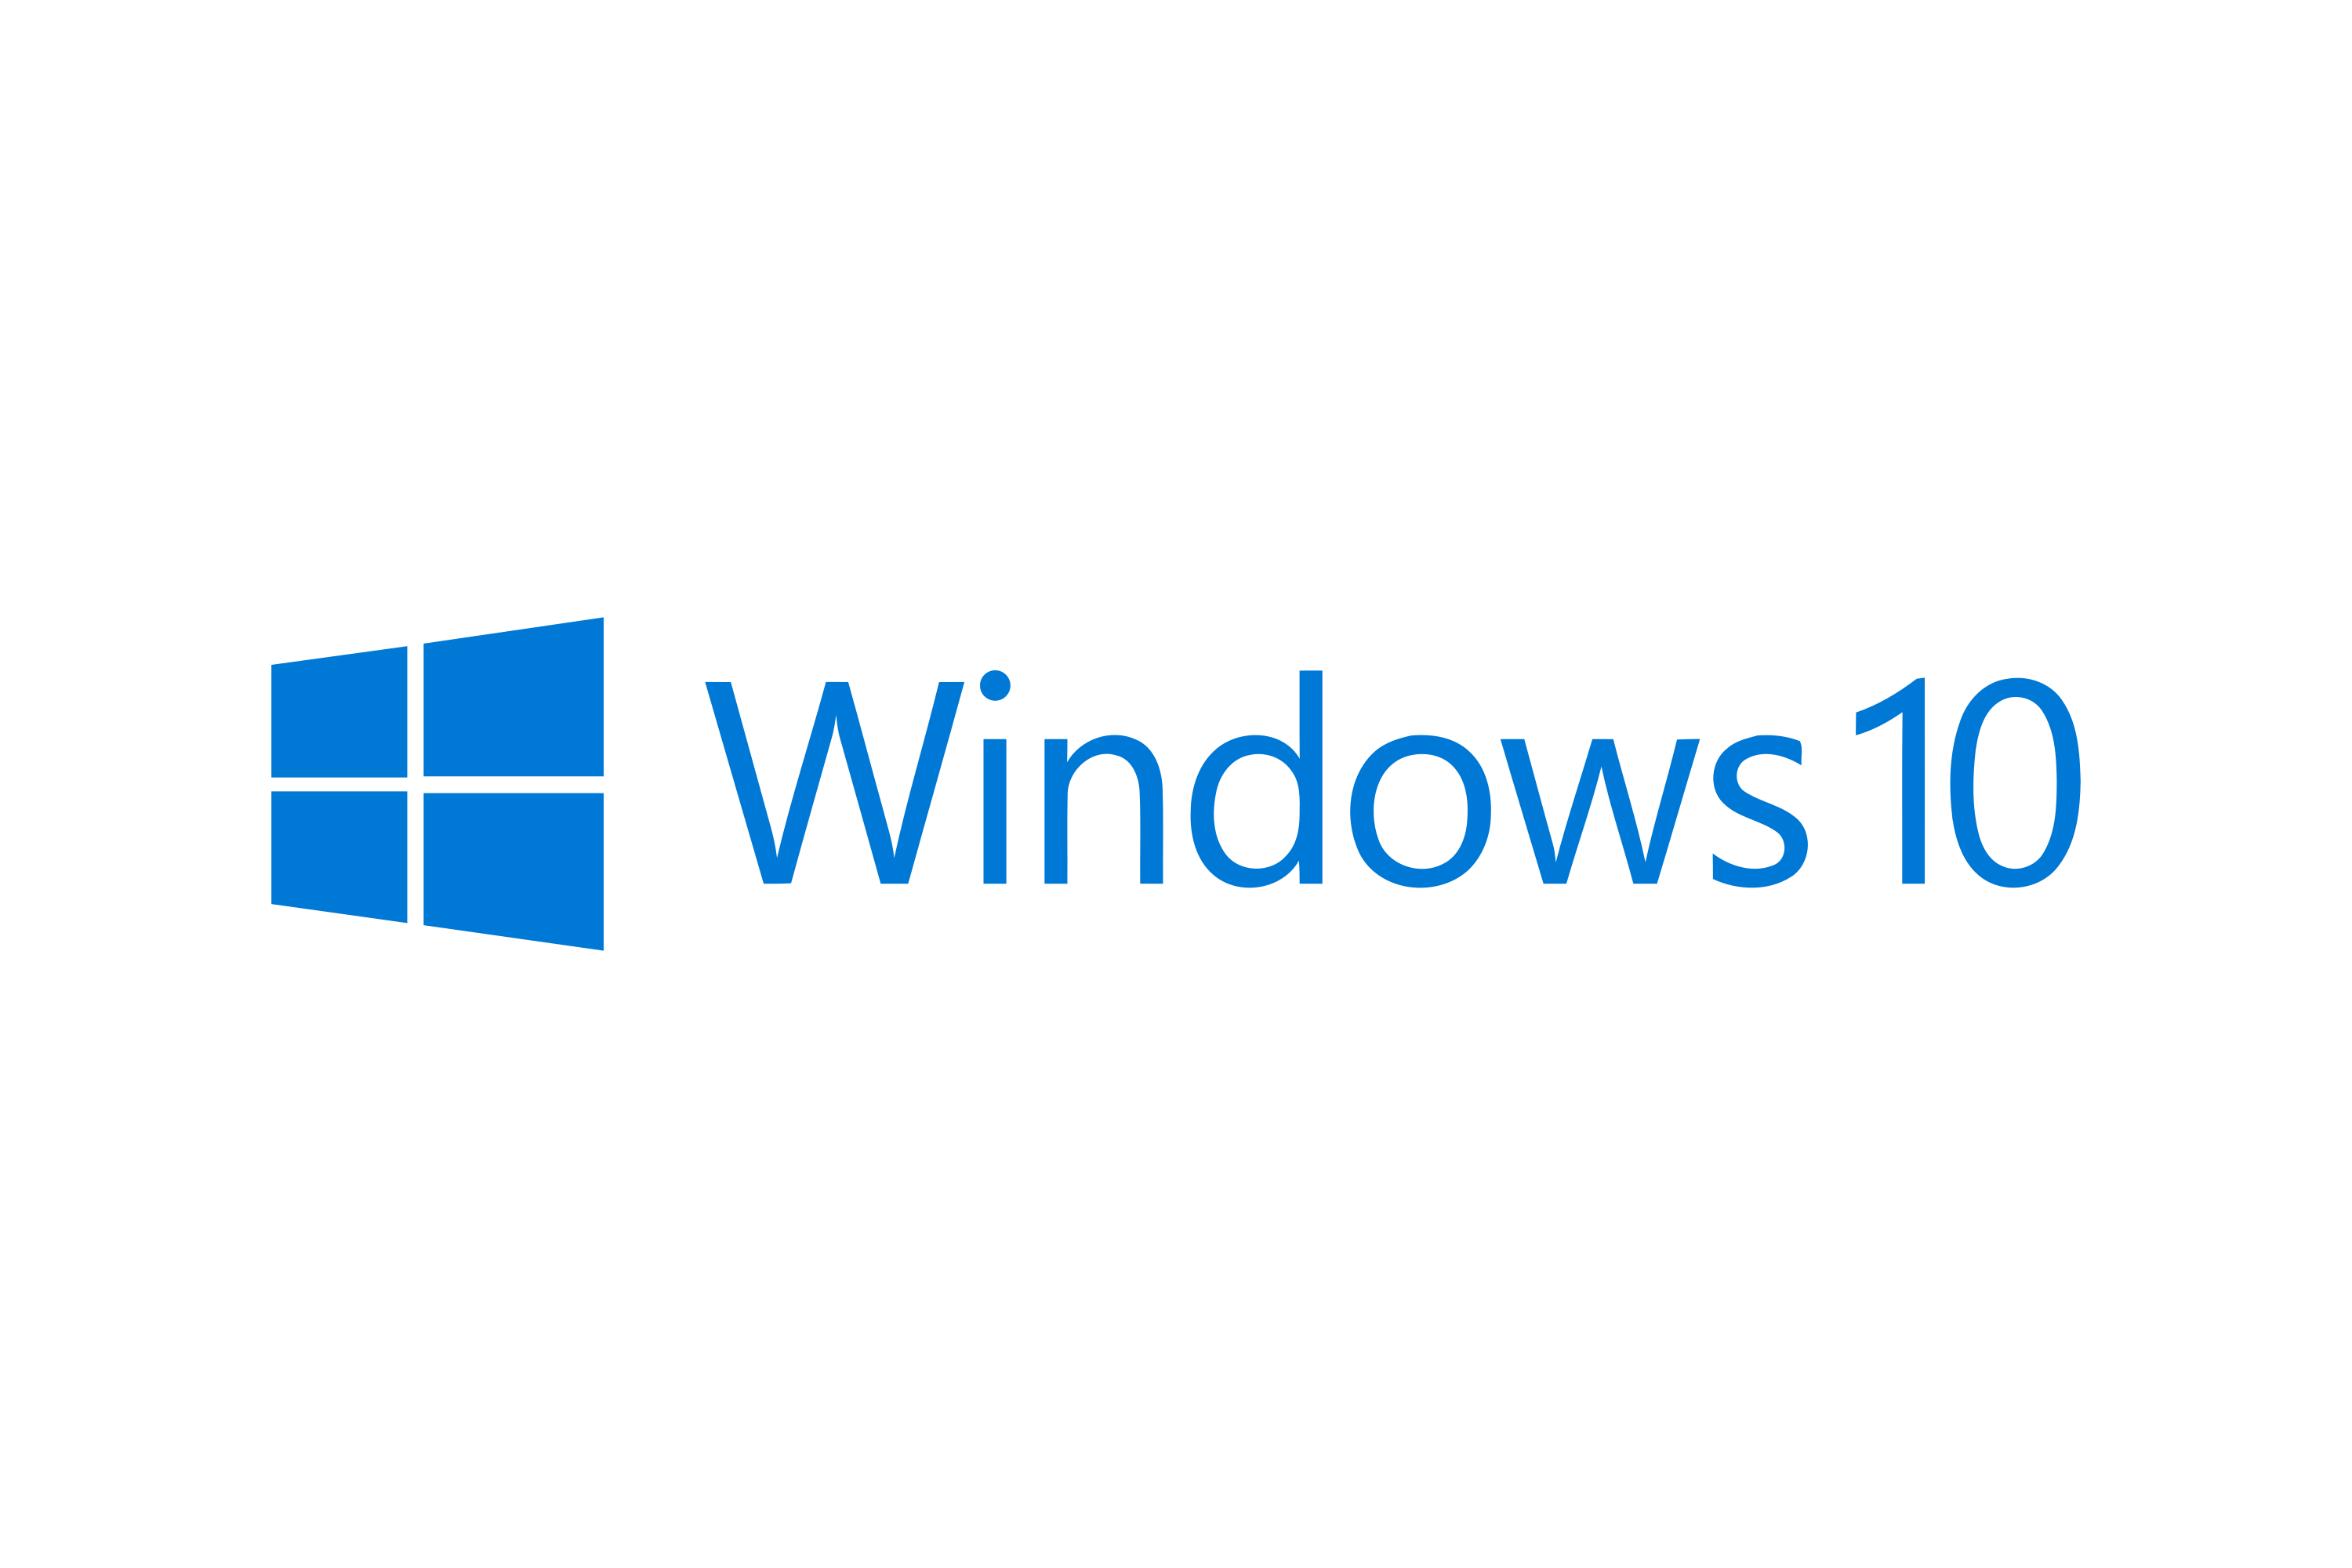 Download Logo Windows 10 Png - KibrisPDR